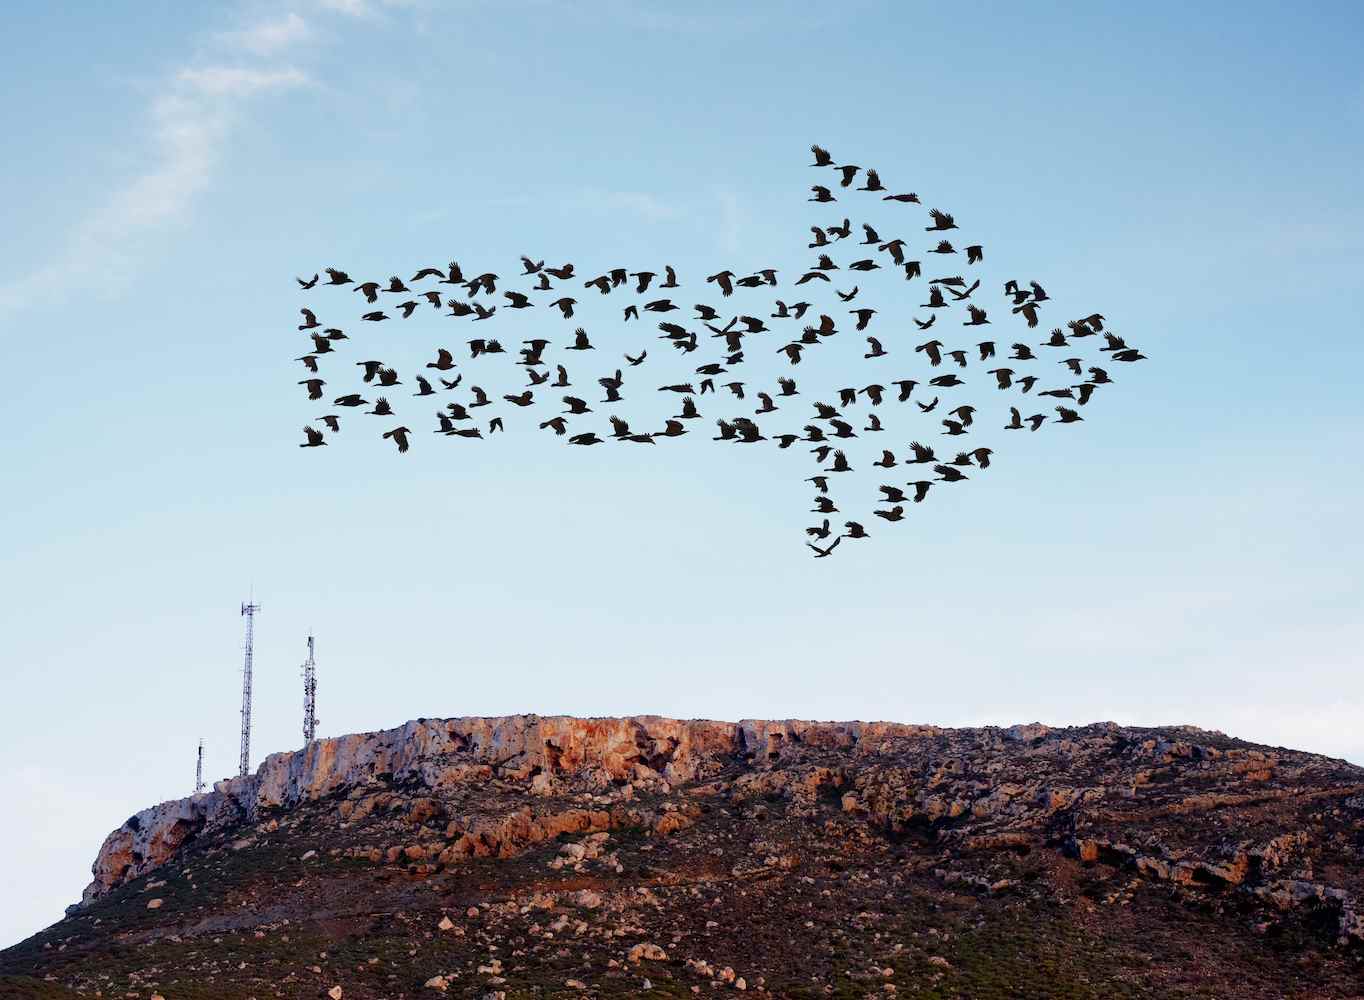 Volée d'oiseaux volant en formation de flèche au-dessus d'une colline avec quelques mâts de communication et de téléphonie mobile.